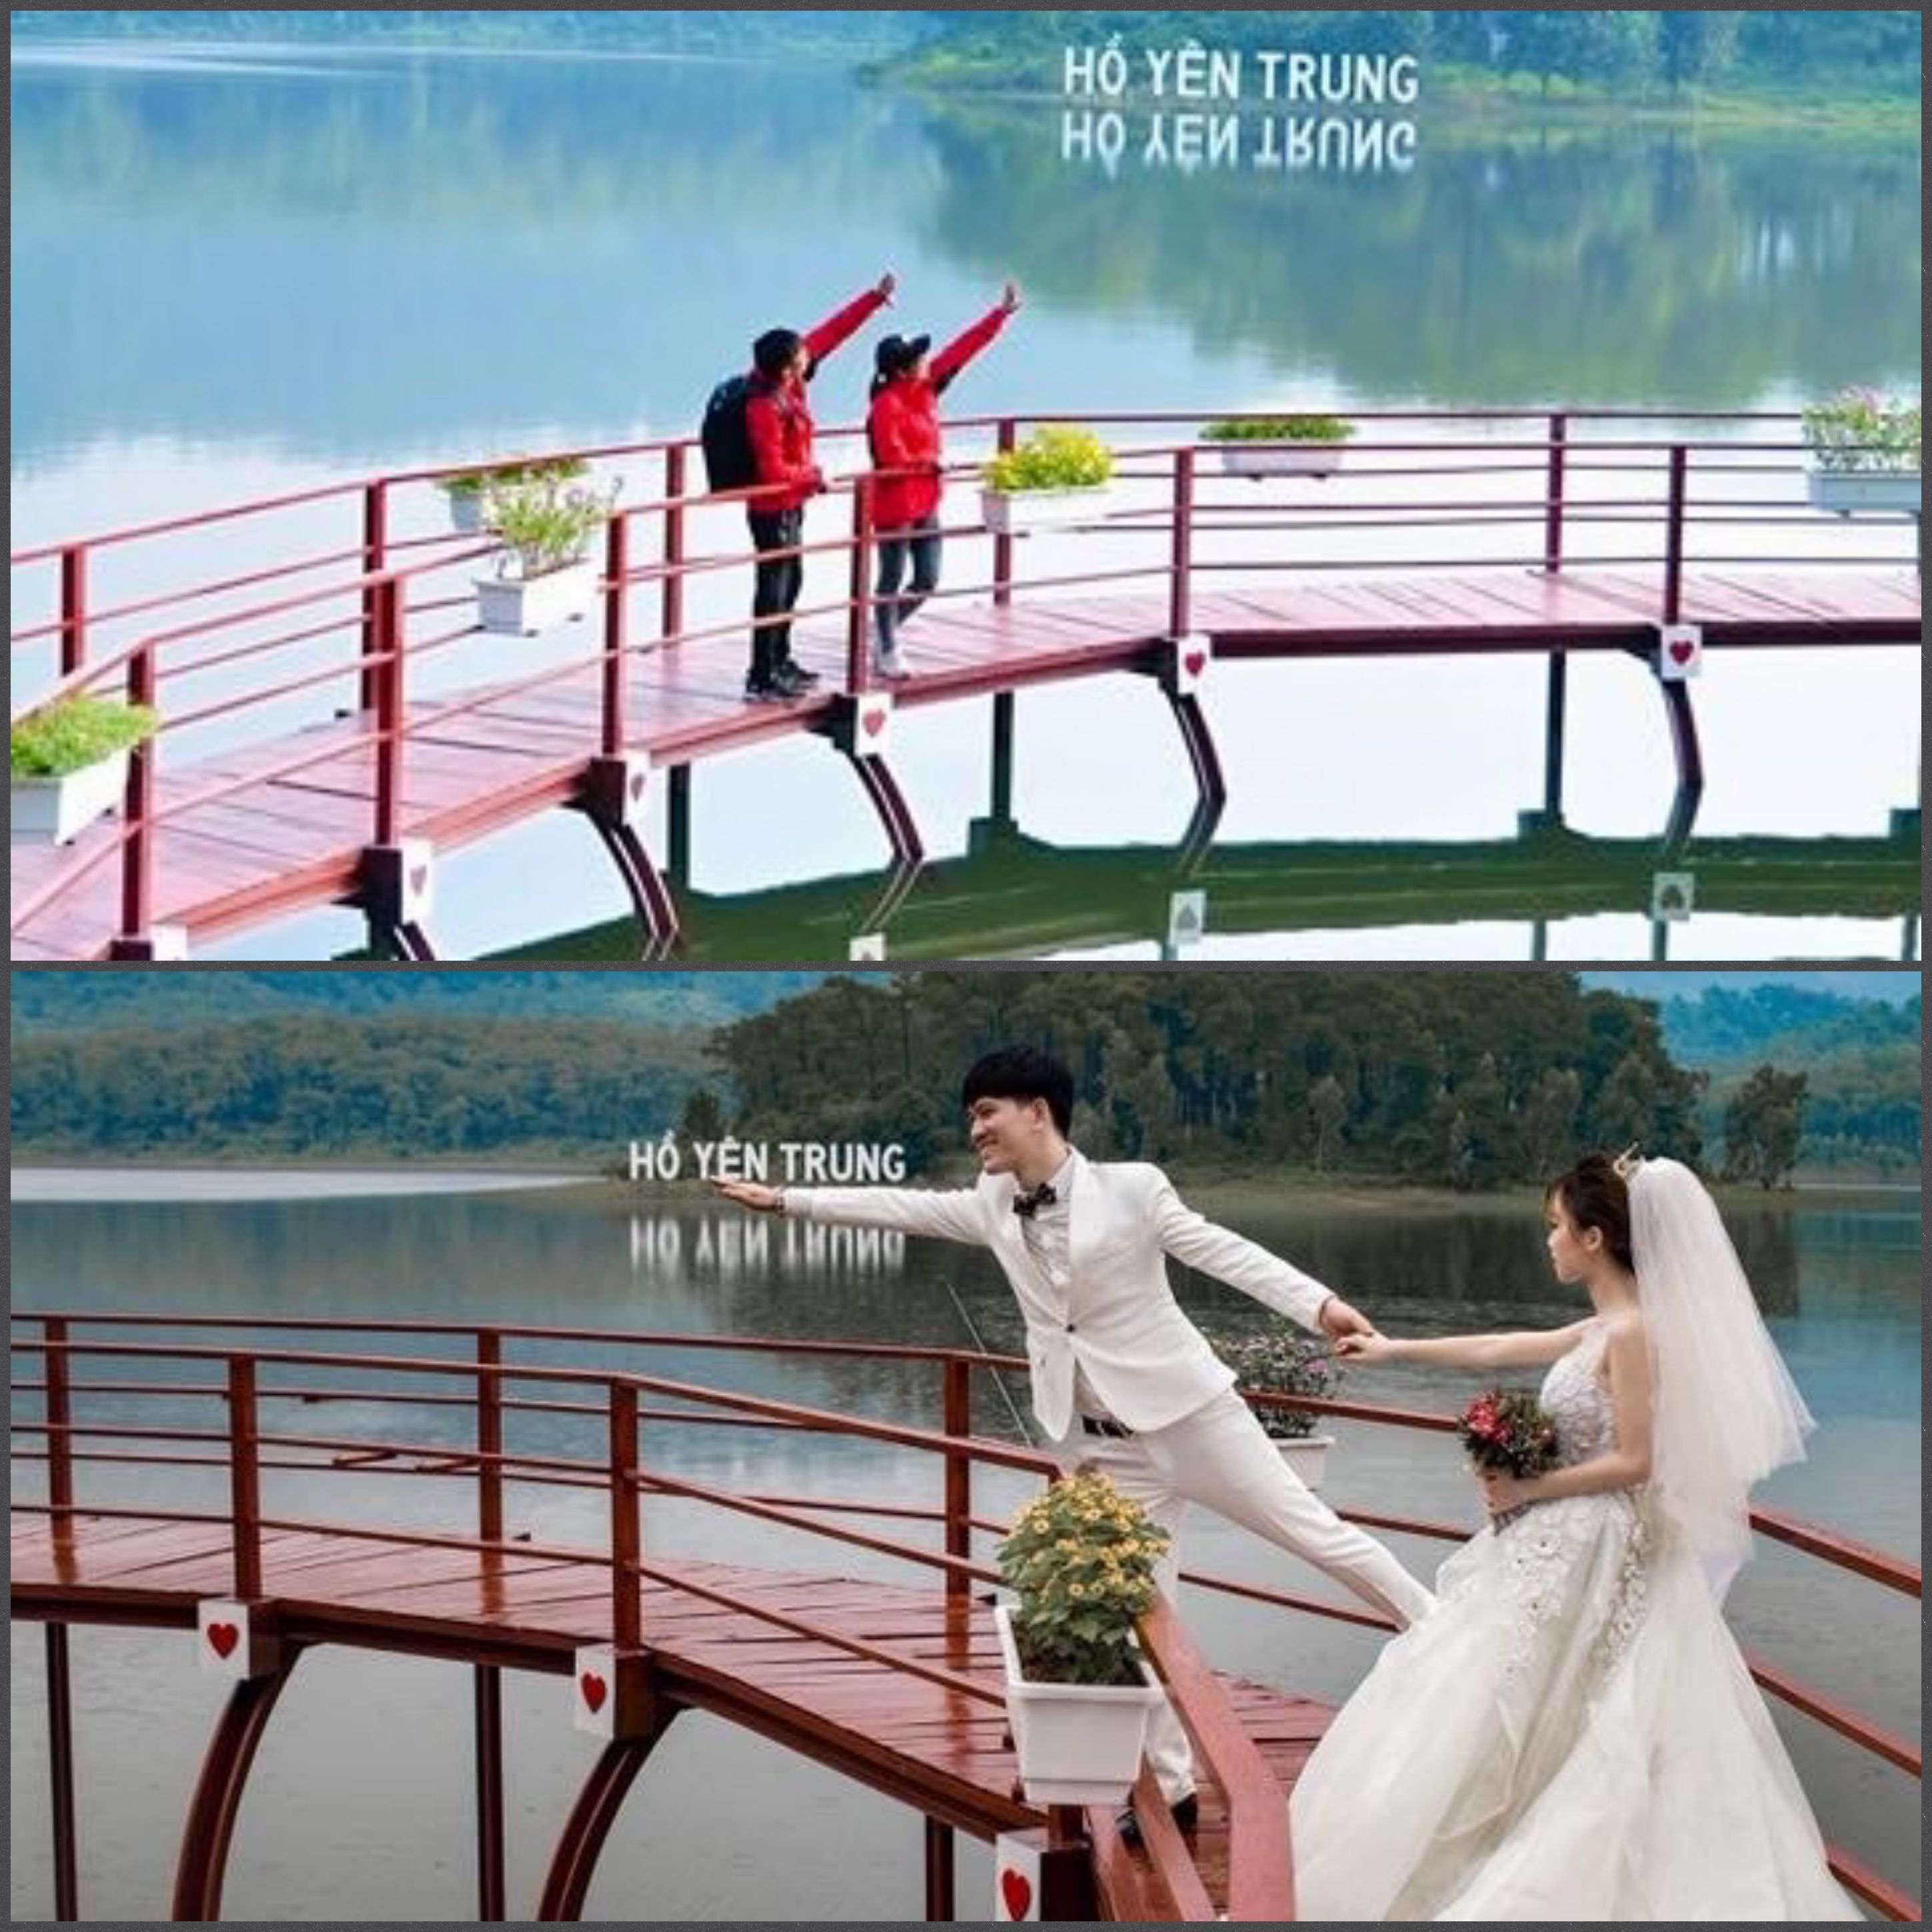 Chỉ cần một chút sáng tạo, hồ Yên Trung đảm bảo mang đến cho người trẻ những bức ảnh thơ mộng không khác gì ở Đà Lạt.